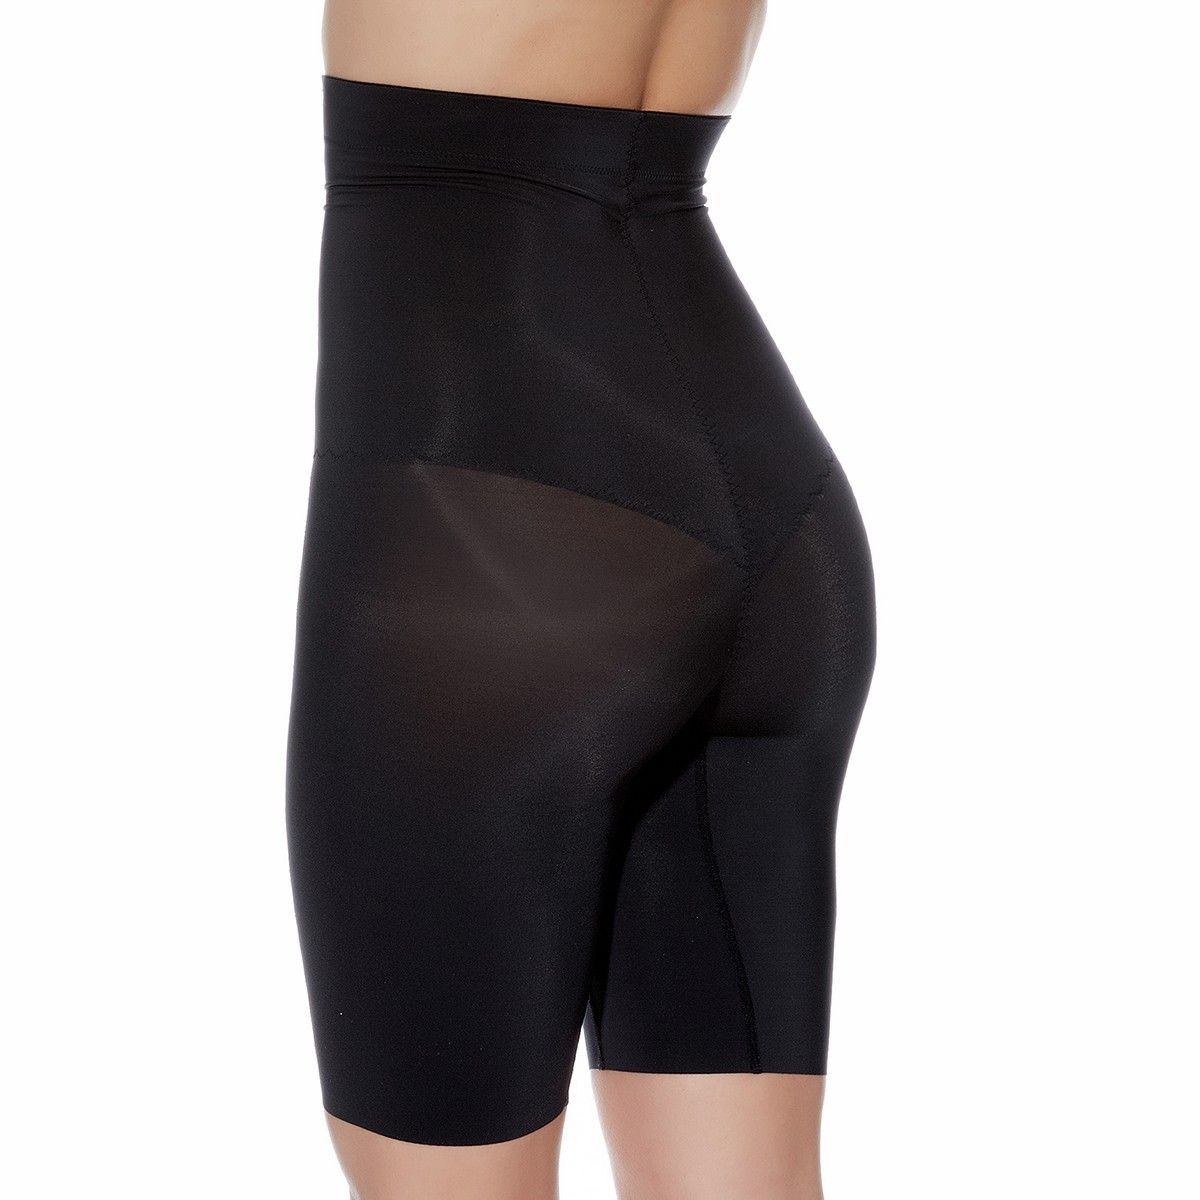 Femme Wacoal Uni Gaine Panty taille haute Beauty Secret Microfibre 